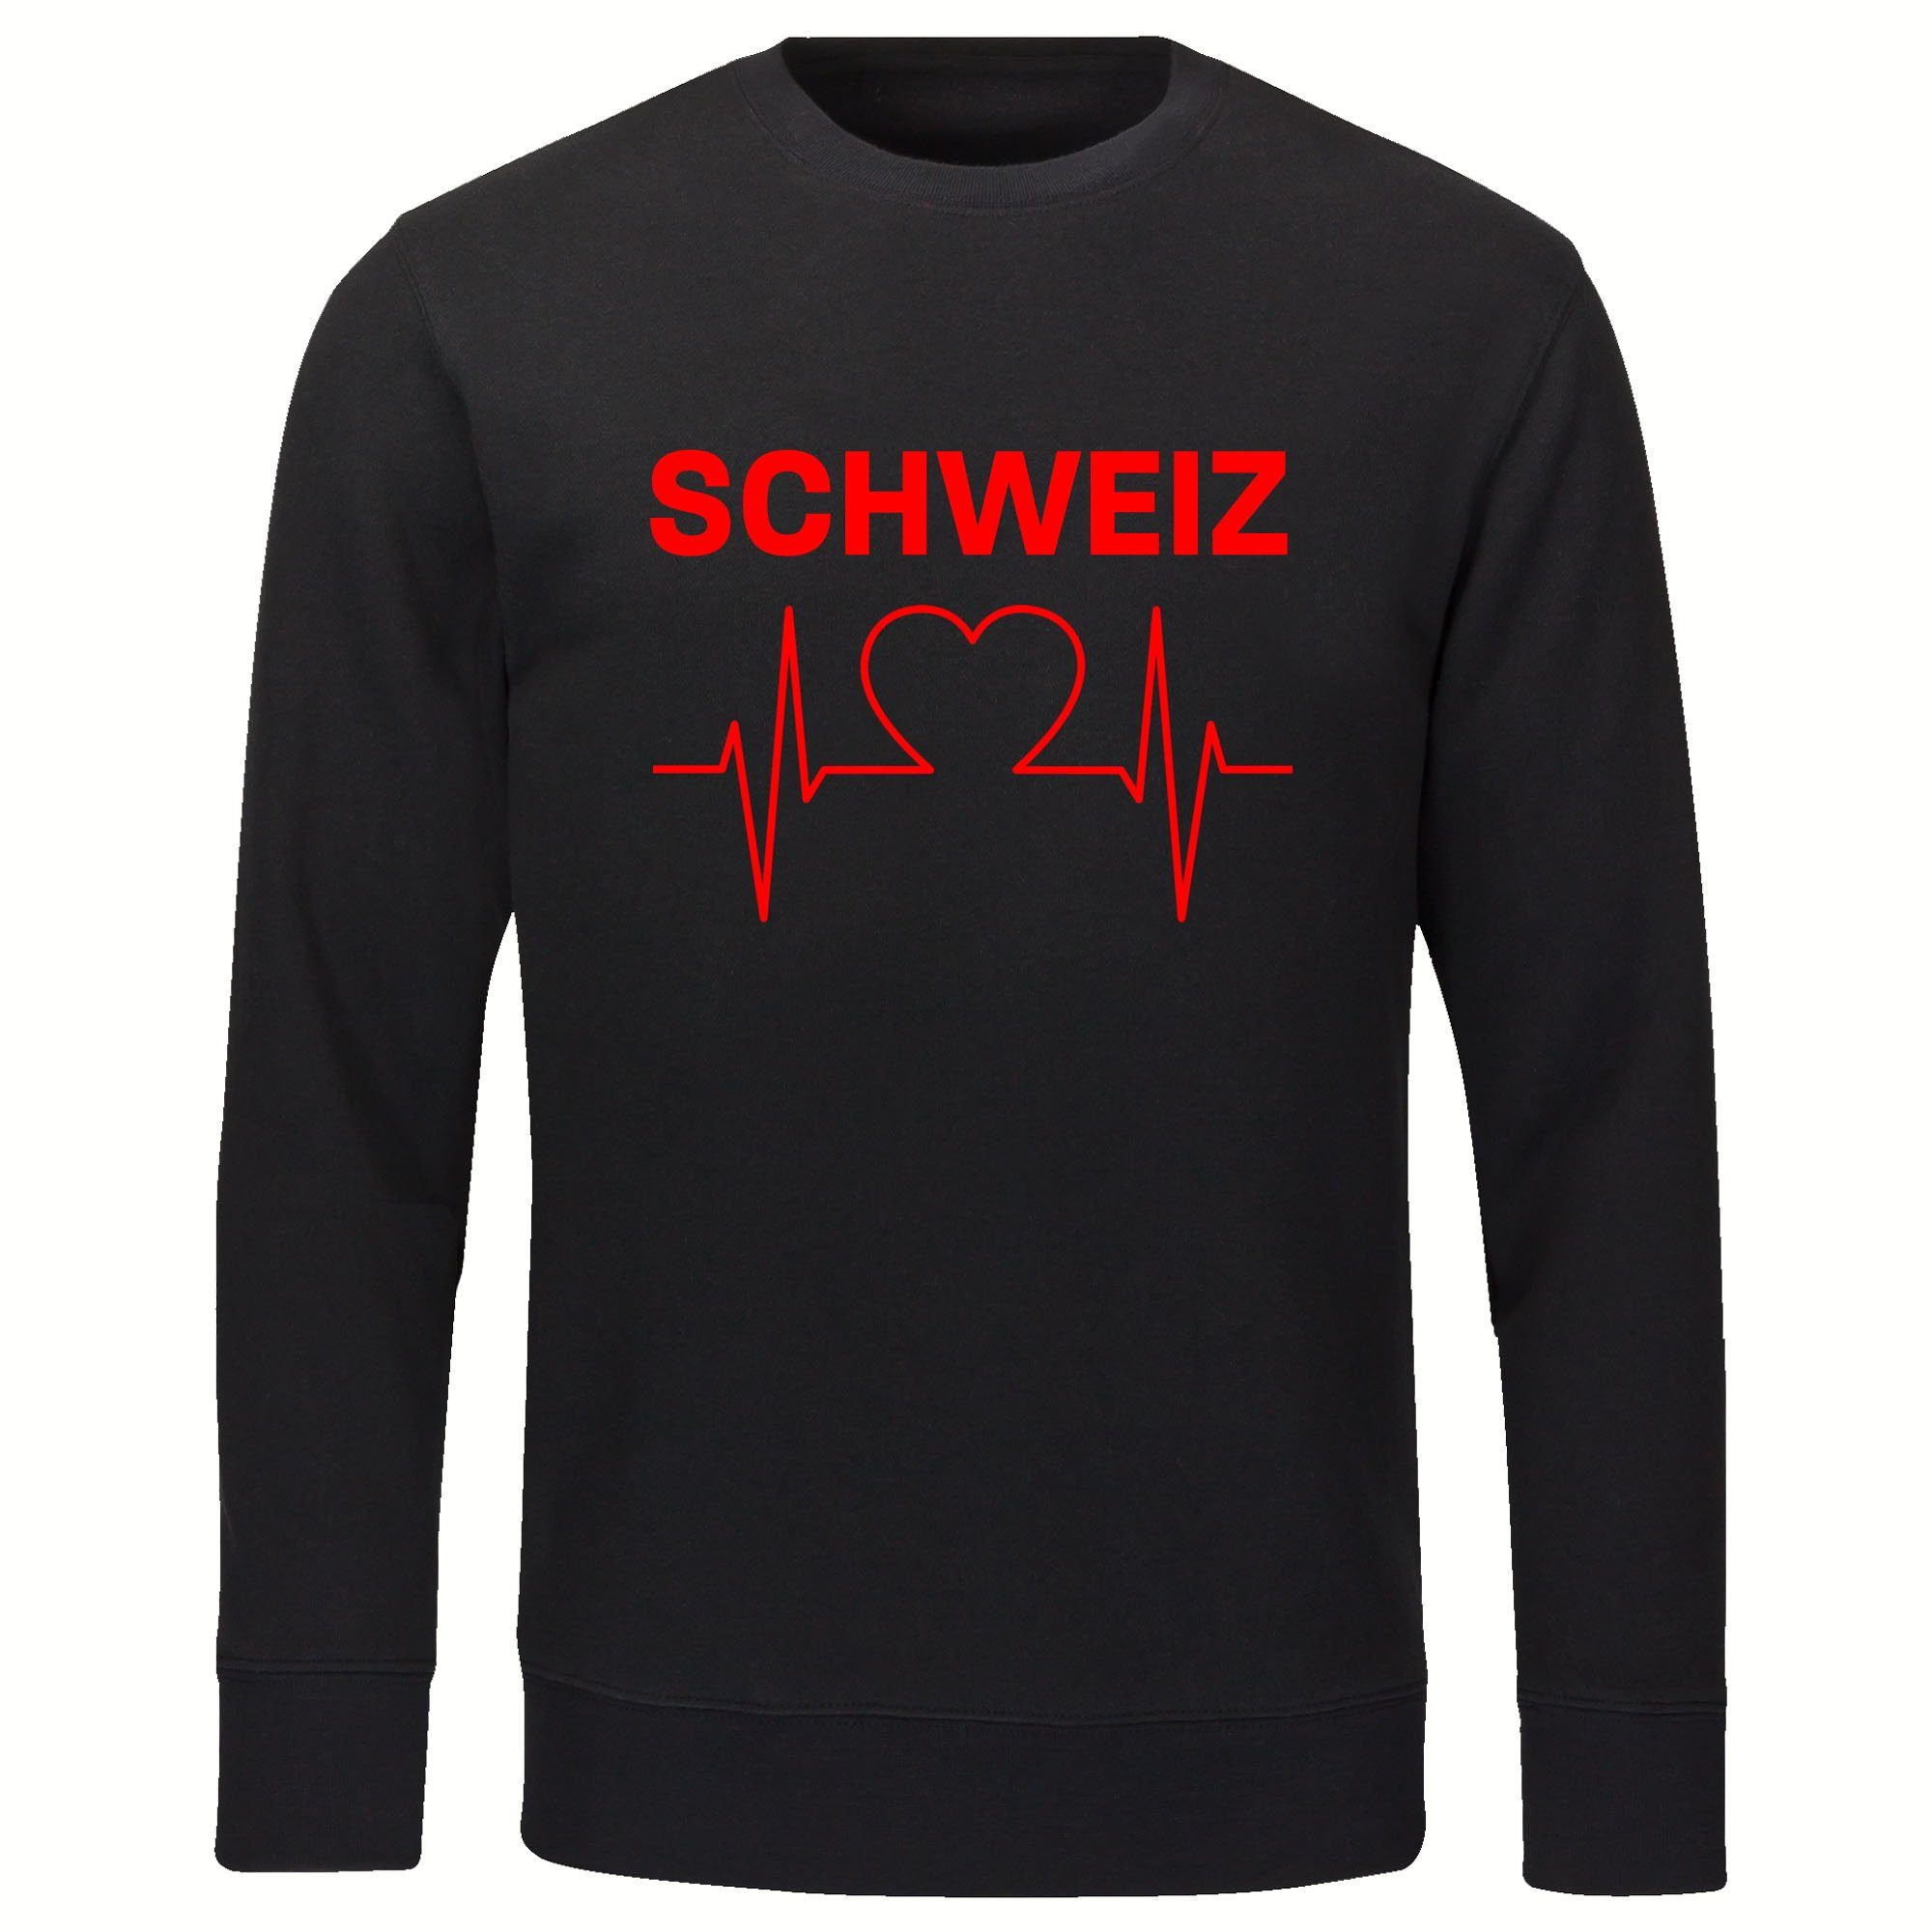 multifanshop Sweatshirt Schweiz - Herzschlag - Pullover